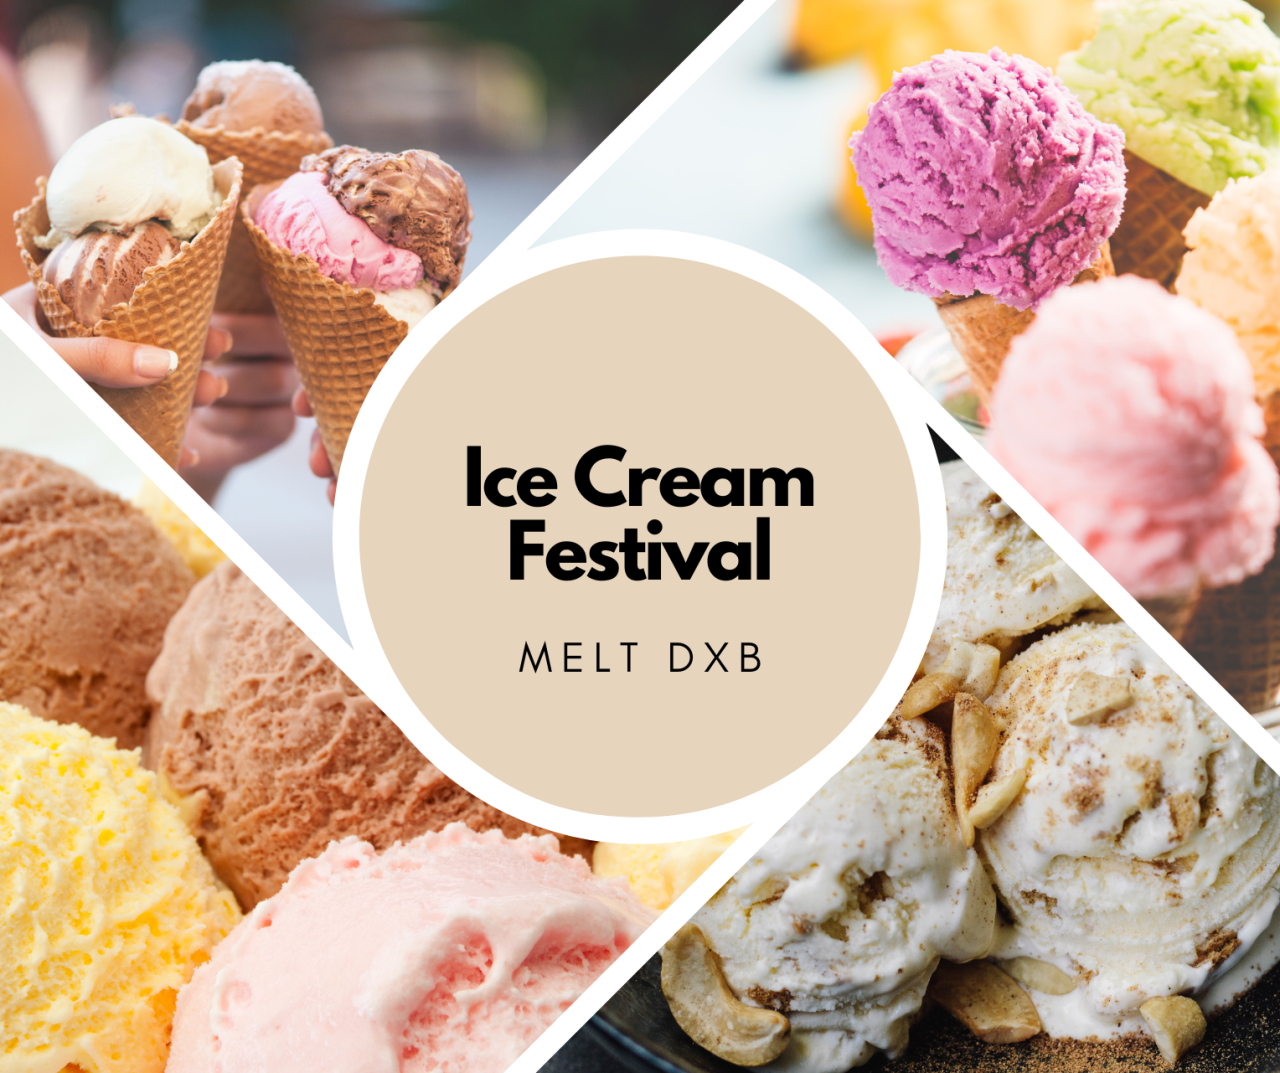 Melt DXB: Dubai Is Hosting an Ice Cream Festival Till the End of August.